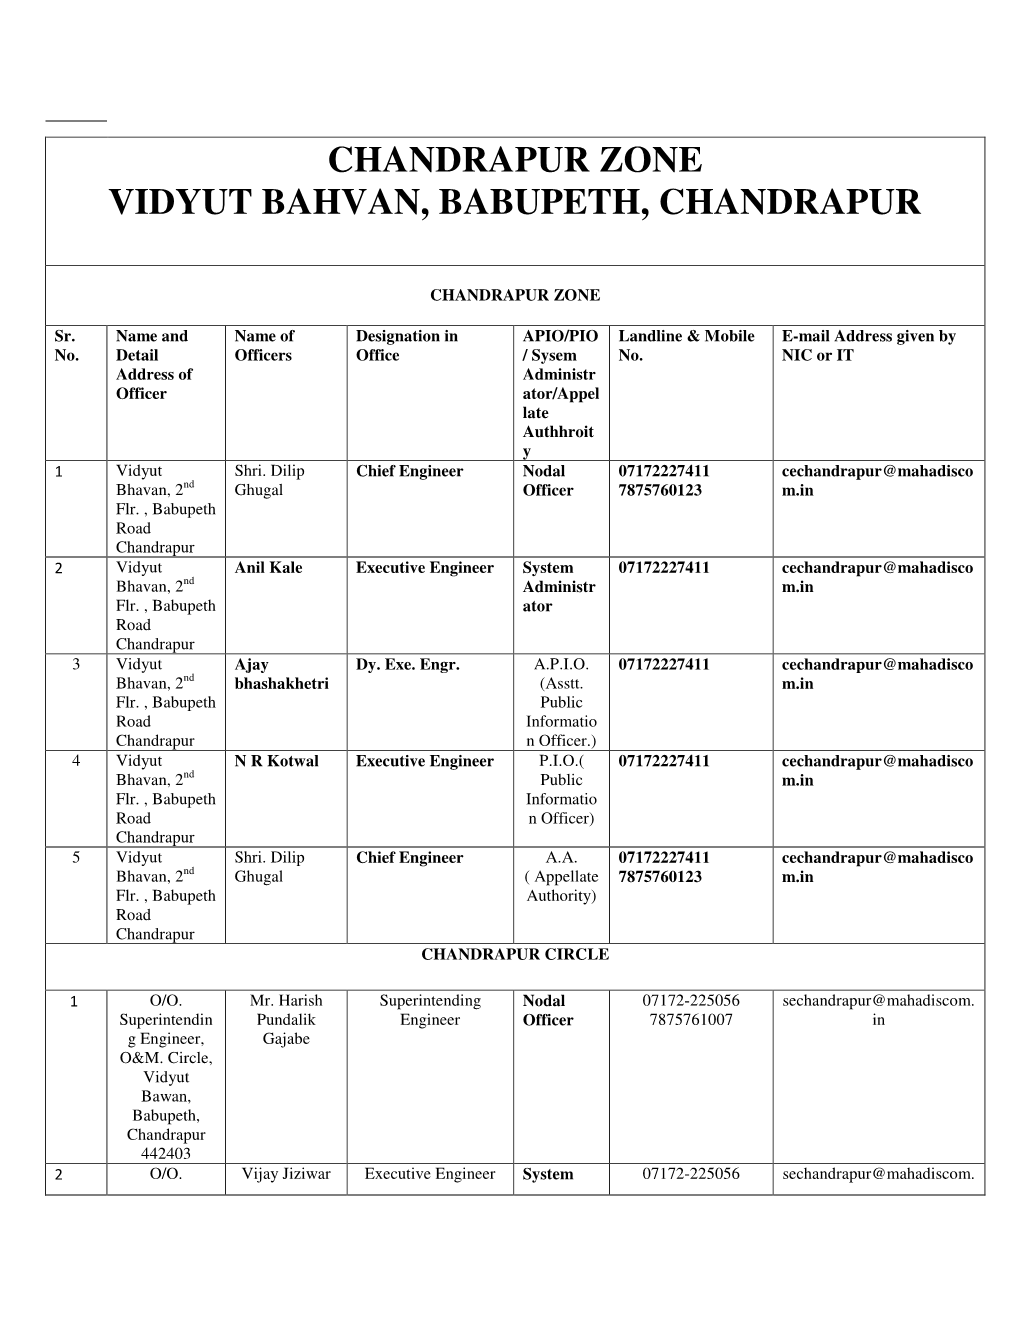 Chandrapur Zone Vidyut Bahvan, Babupeth, Chandrapur